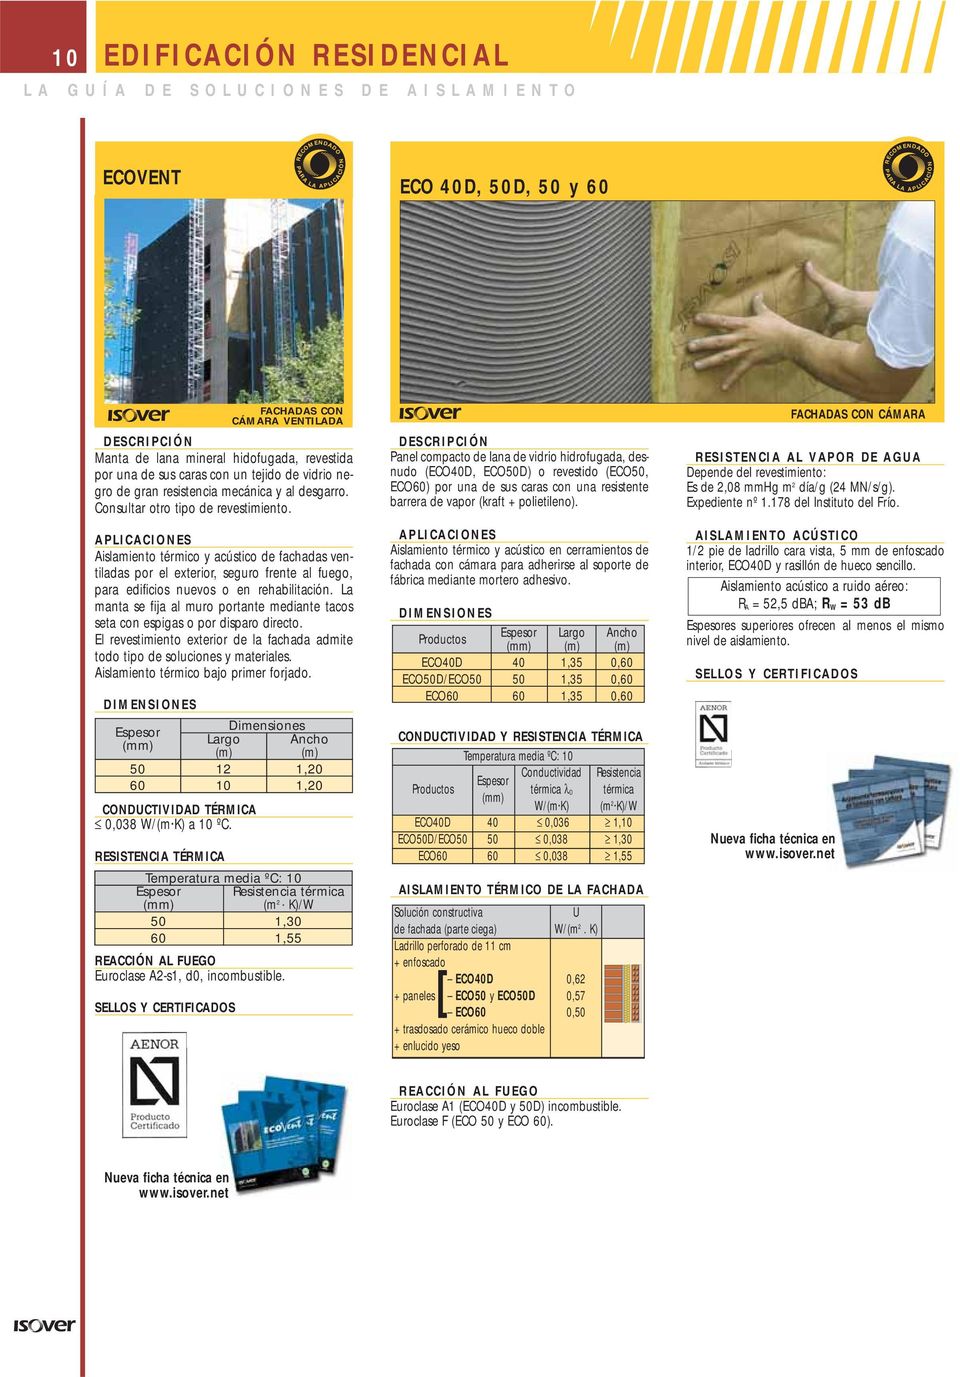 Aislamiento térmico y acústico de fachadas ventiladas por el exterior, seguro frente al fuego, para edificios nuevos o en rehabilitación.